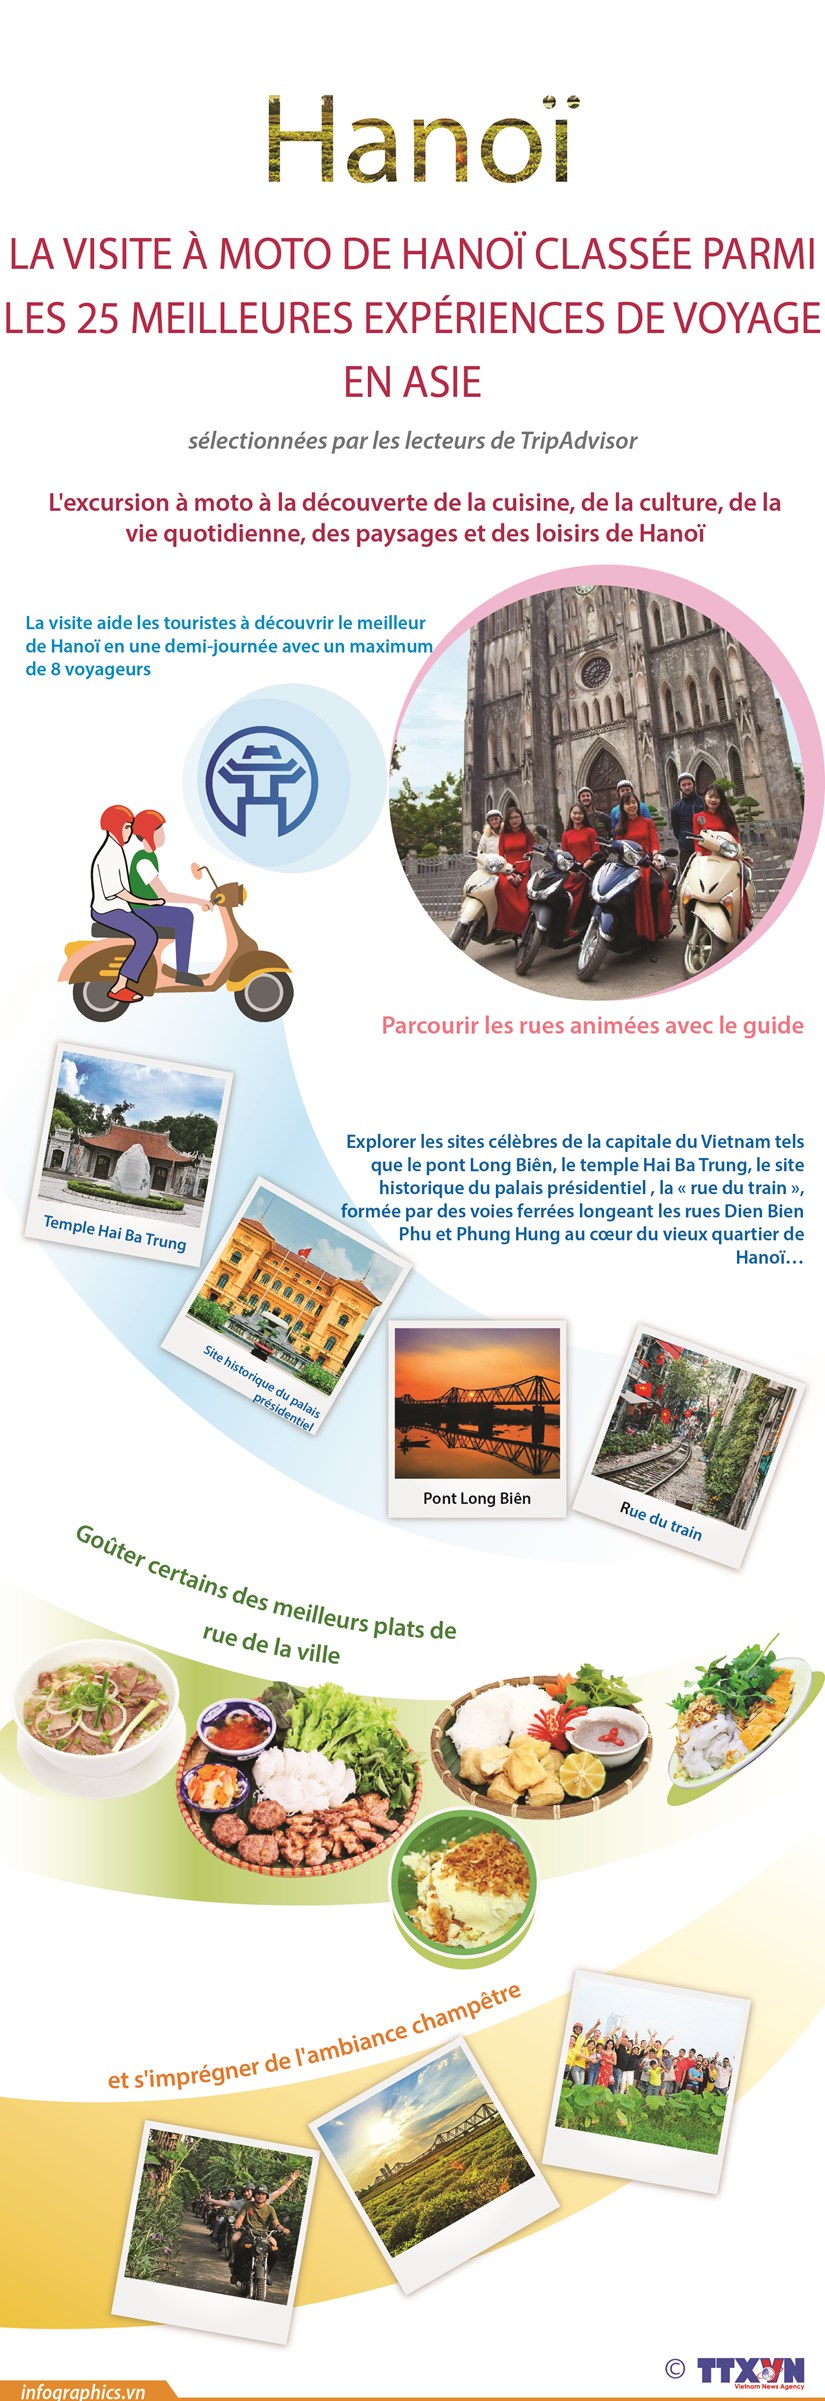 La visite a moto de Hanoi classee parmi les 25 meilleures experiences de voyage en Asie hinh anh 1